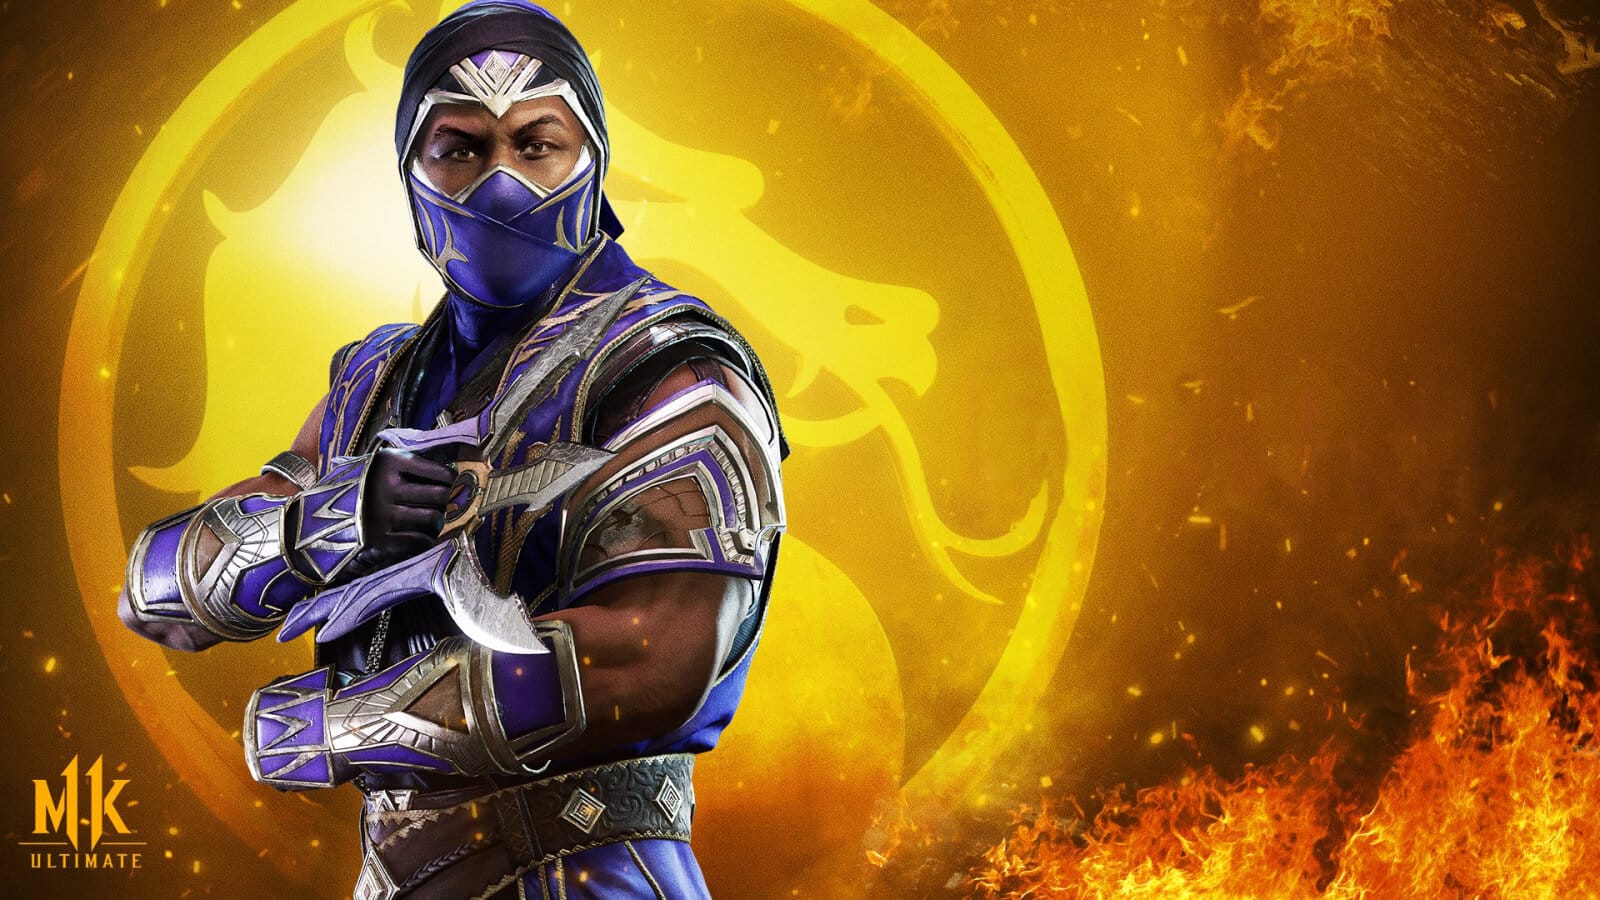 Mortal Kombat 11 Ultimate Ön Siparişe Sunuldu - PC Hocası